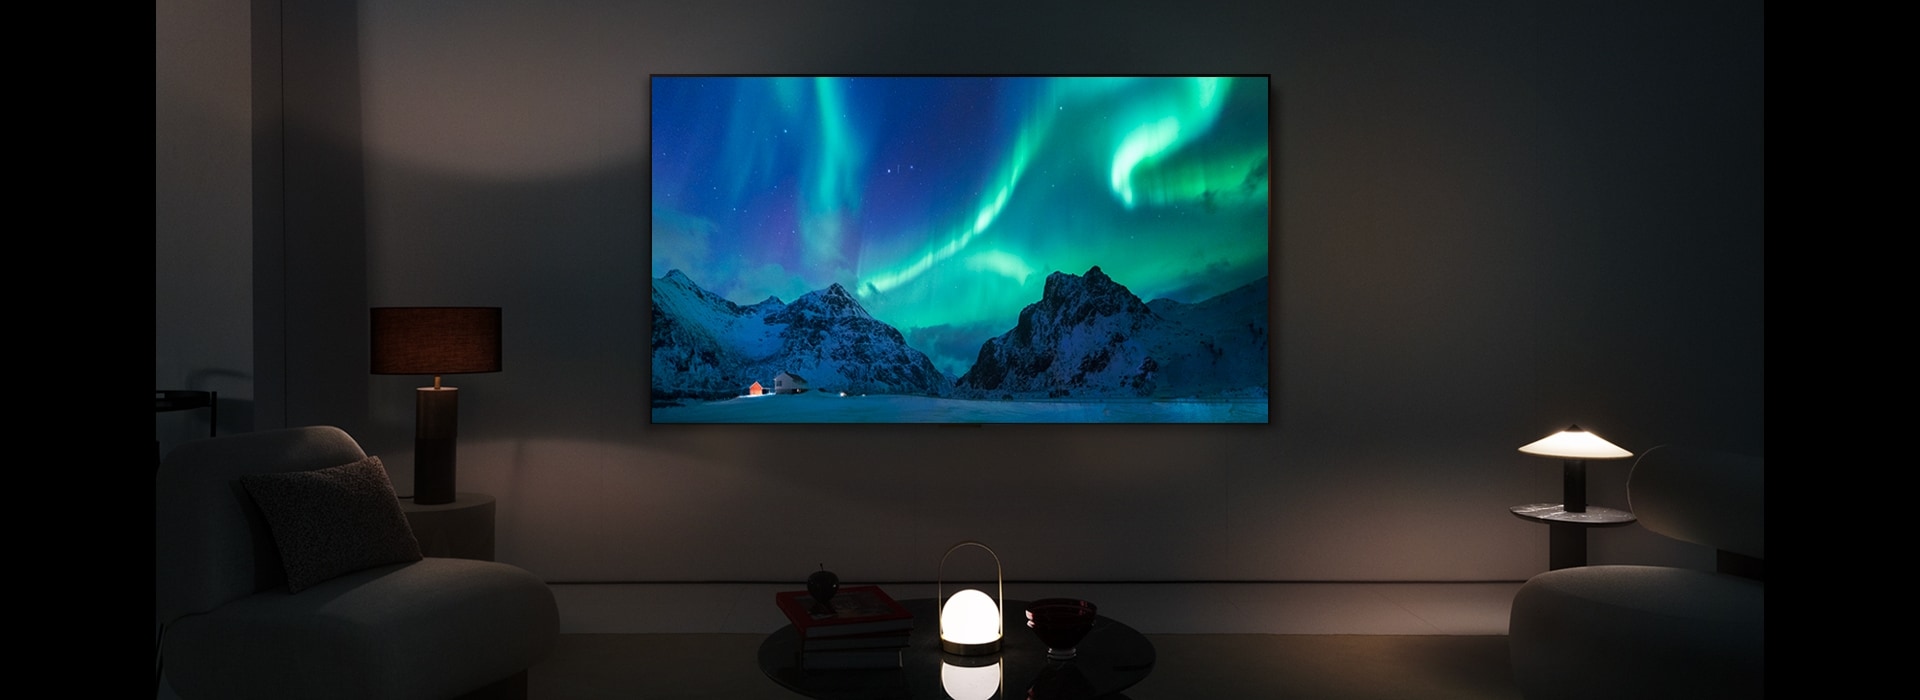 在晚上，LG OLED 電視和 LG Soundbar 放置在現代生活空間中。顯示北極光的屏幕圖像具有理想的亮度水平。